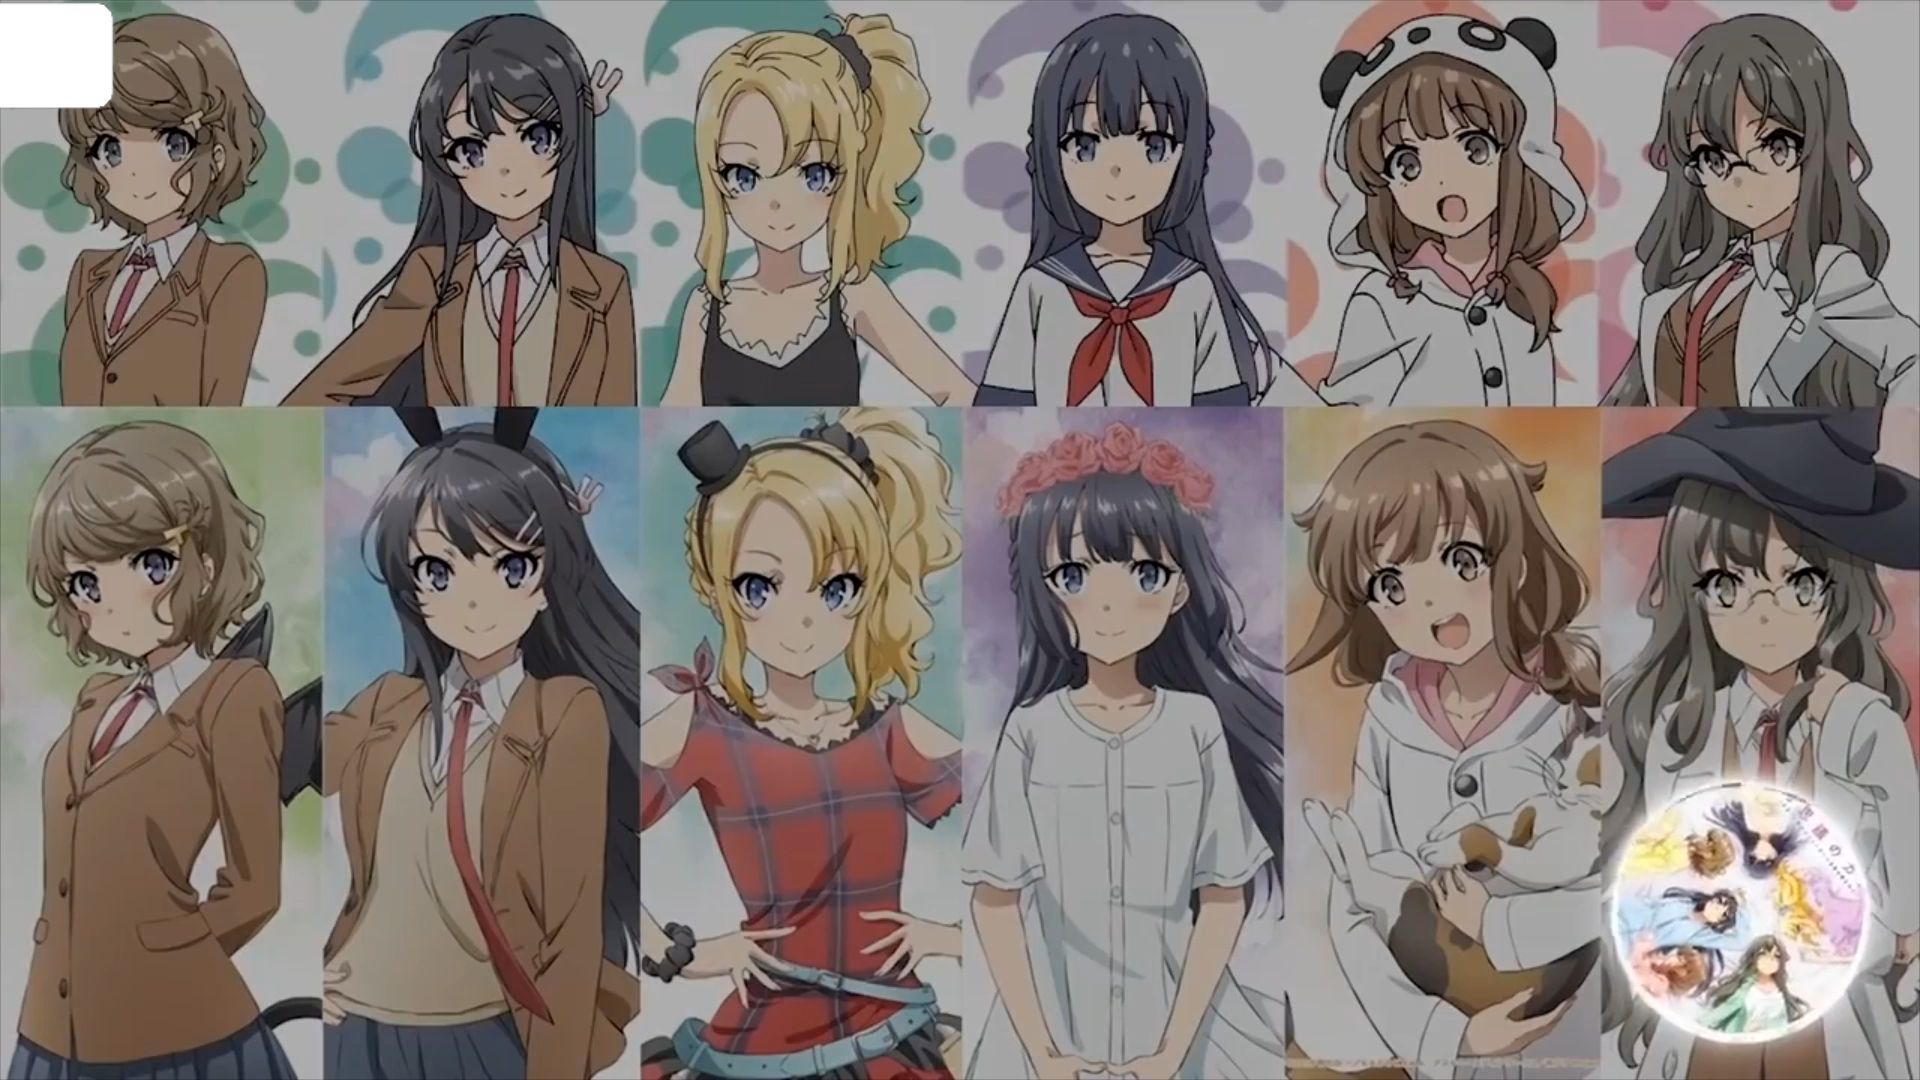 Seishun Buta Yarou wa Bunny Girl Senpai no Yume wo Minai - nhạc kết thúc # anime - Bilibili